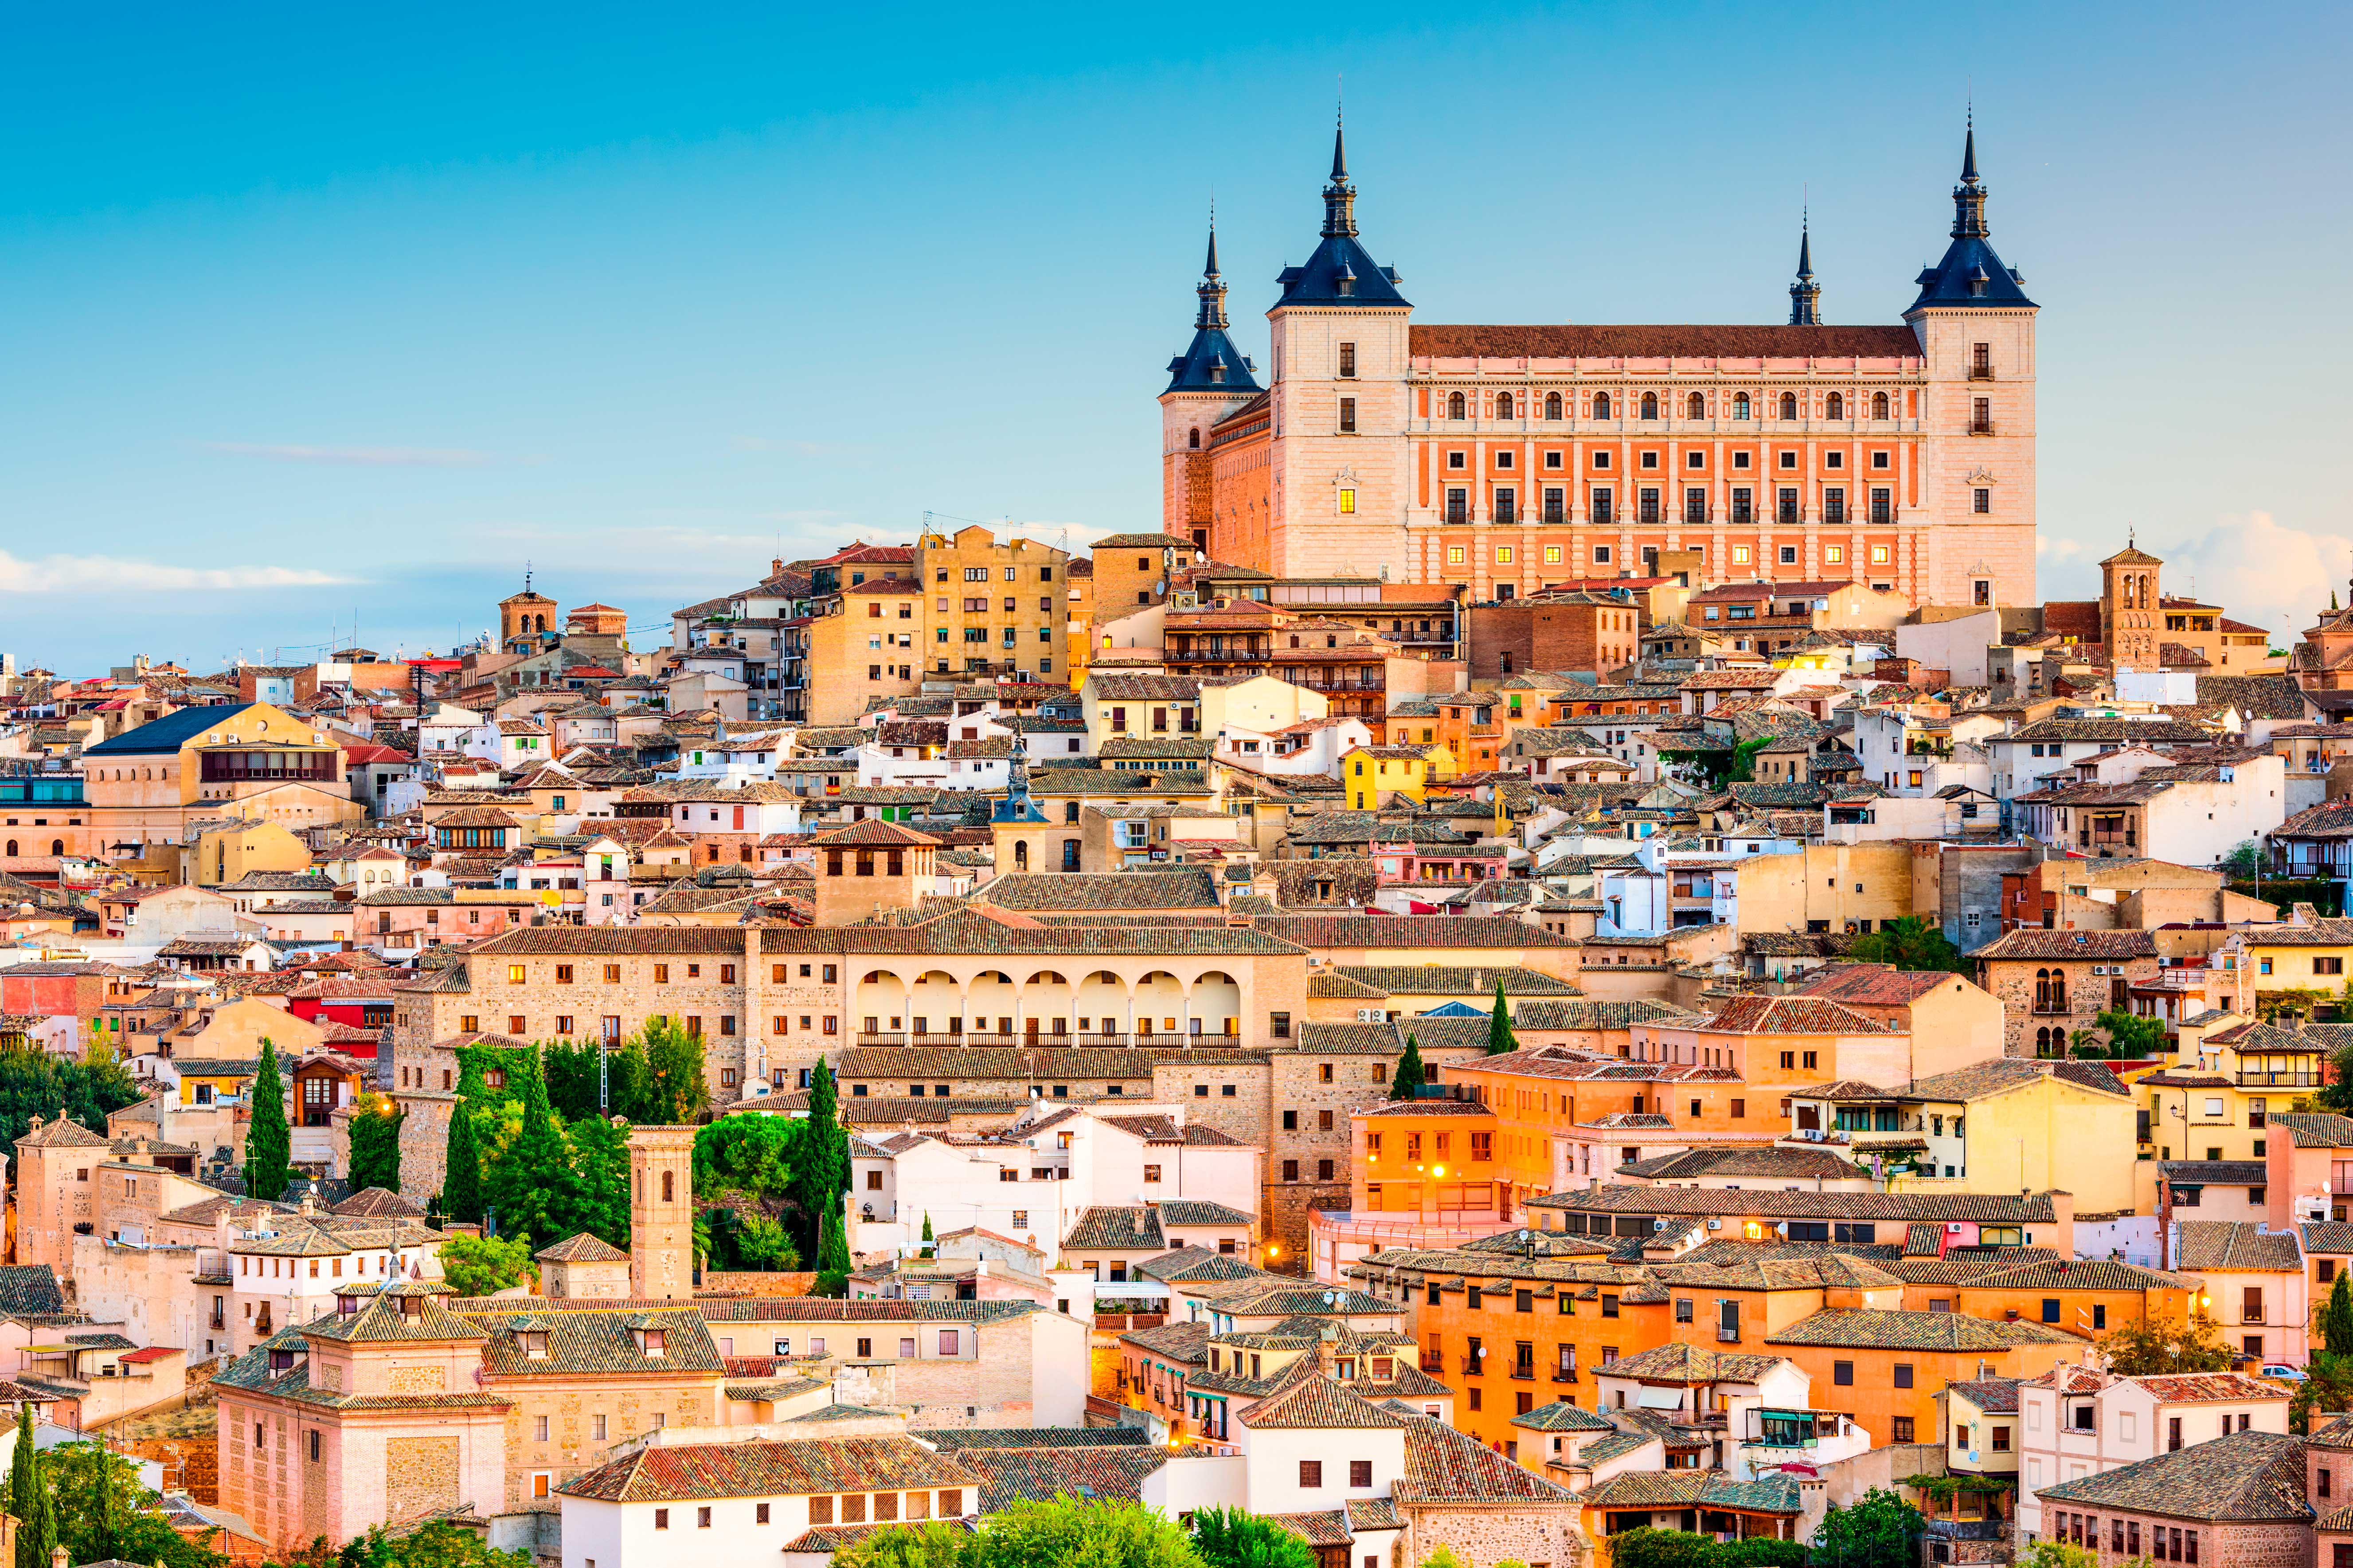  Панорама Испанского города как символ получения вида на жительство в Испании дя финансово независимых лиц желающих иммигрировать в Испанию.